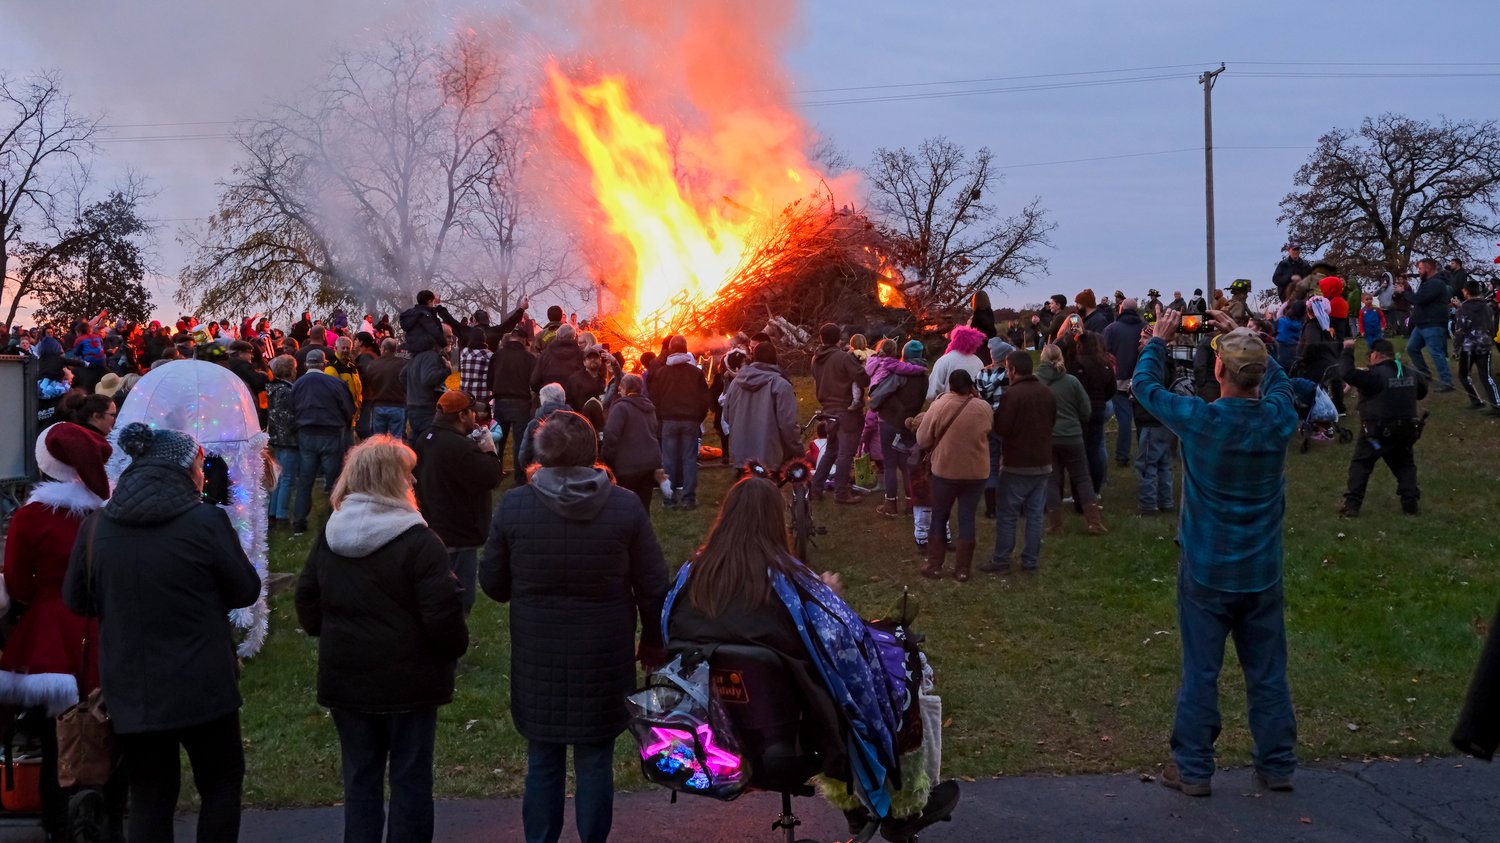 Crowd surrounds the bonfire.